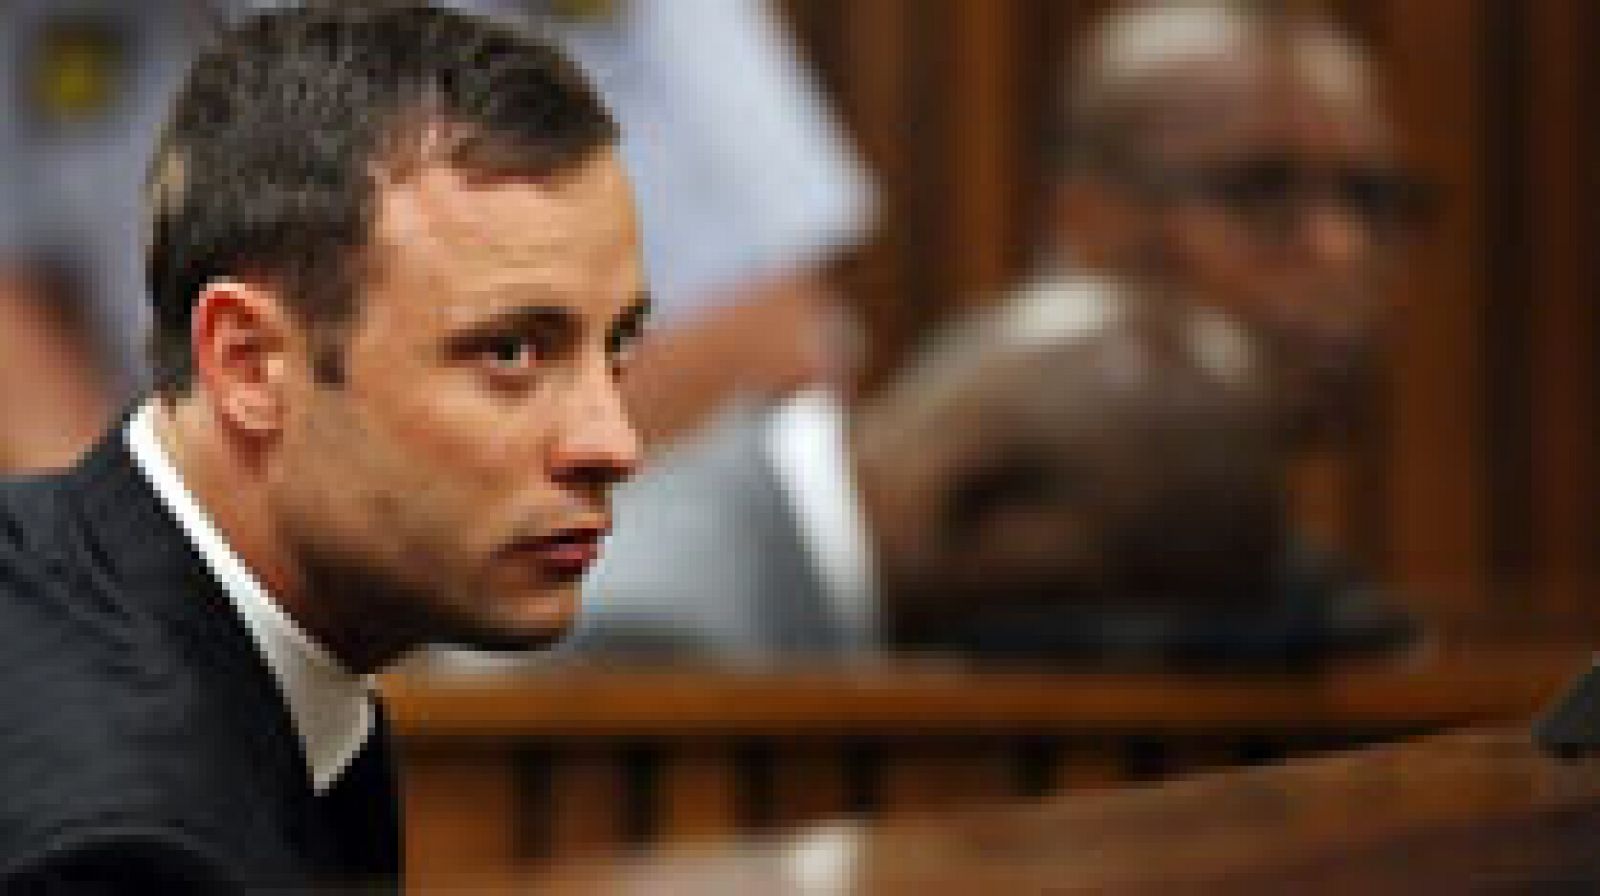 El atleta sudafricano Oscar Pistorius ha sido declarado culpable de homicidio involuntario en el juicio por la muerte de su novia, a quien disparó a través de la puerta del cuarto de baño, una sentencia que podría acarrear hasta 15 años de cárcel para el deportista, según el código penal sudafricano.